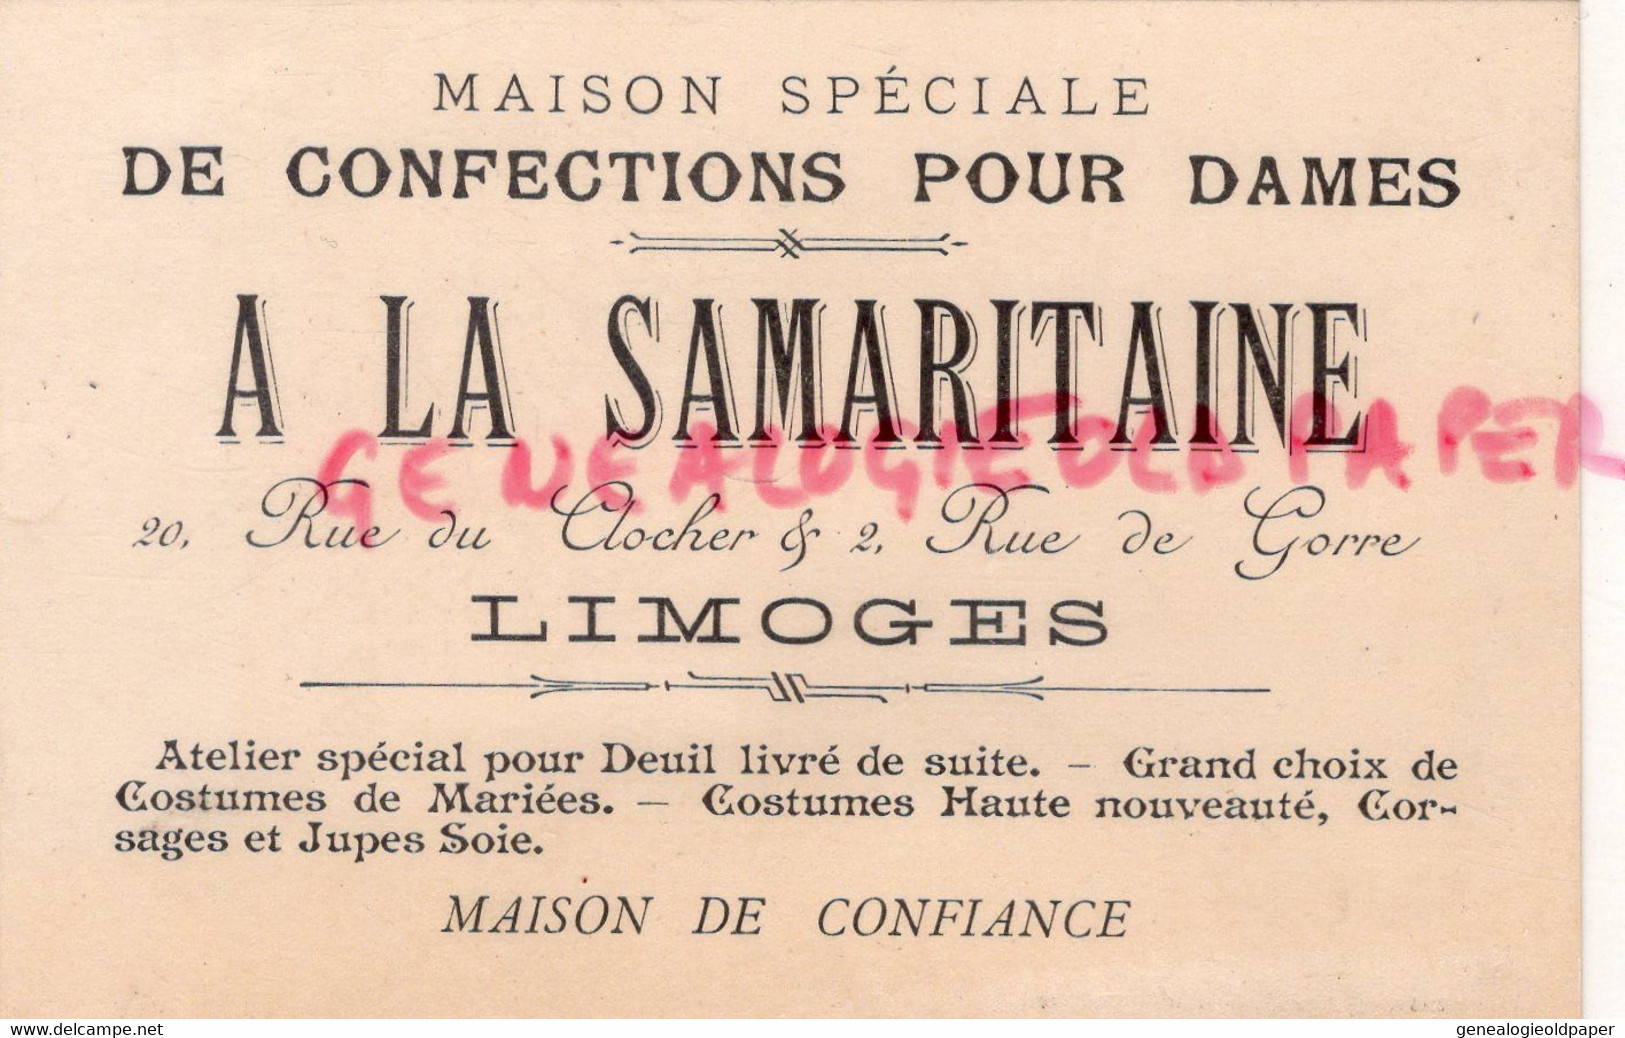 87- LIMOGES- RARE CARTE A LA SAMARITAINE -CONFECTIONS POUR DAMES-20 RUE DU CLOCHER -2 RUE DE GORRE-CONFECTION - Textile & Vestimentaire